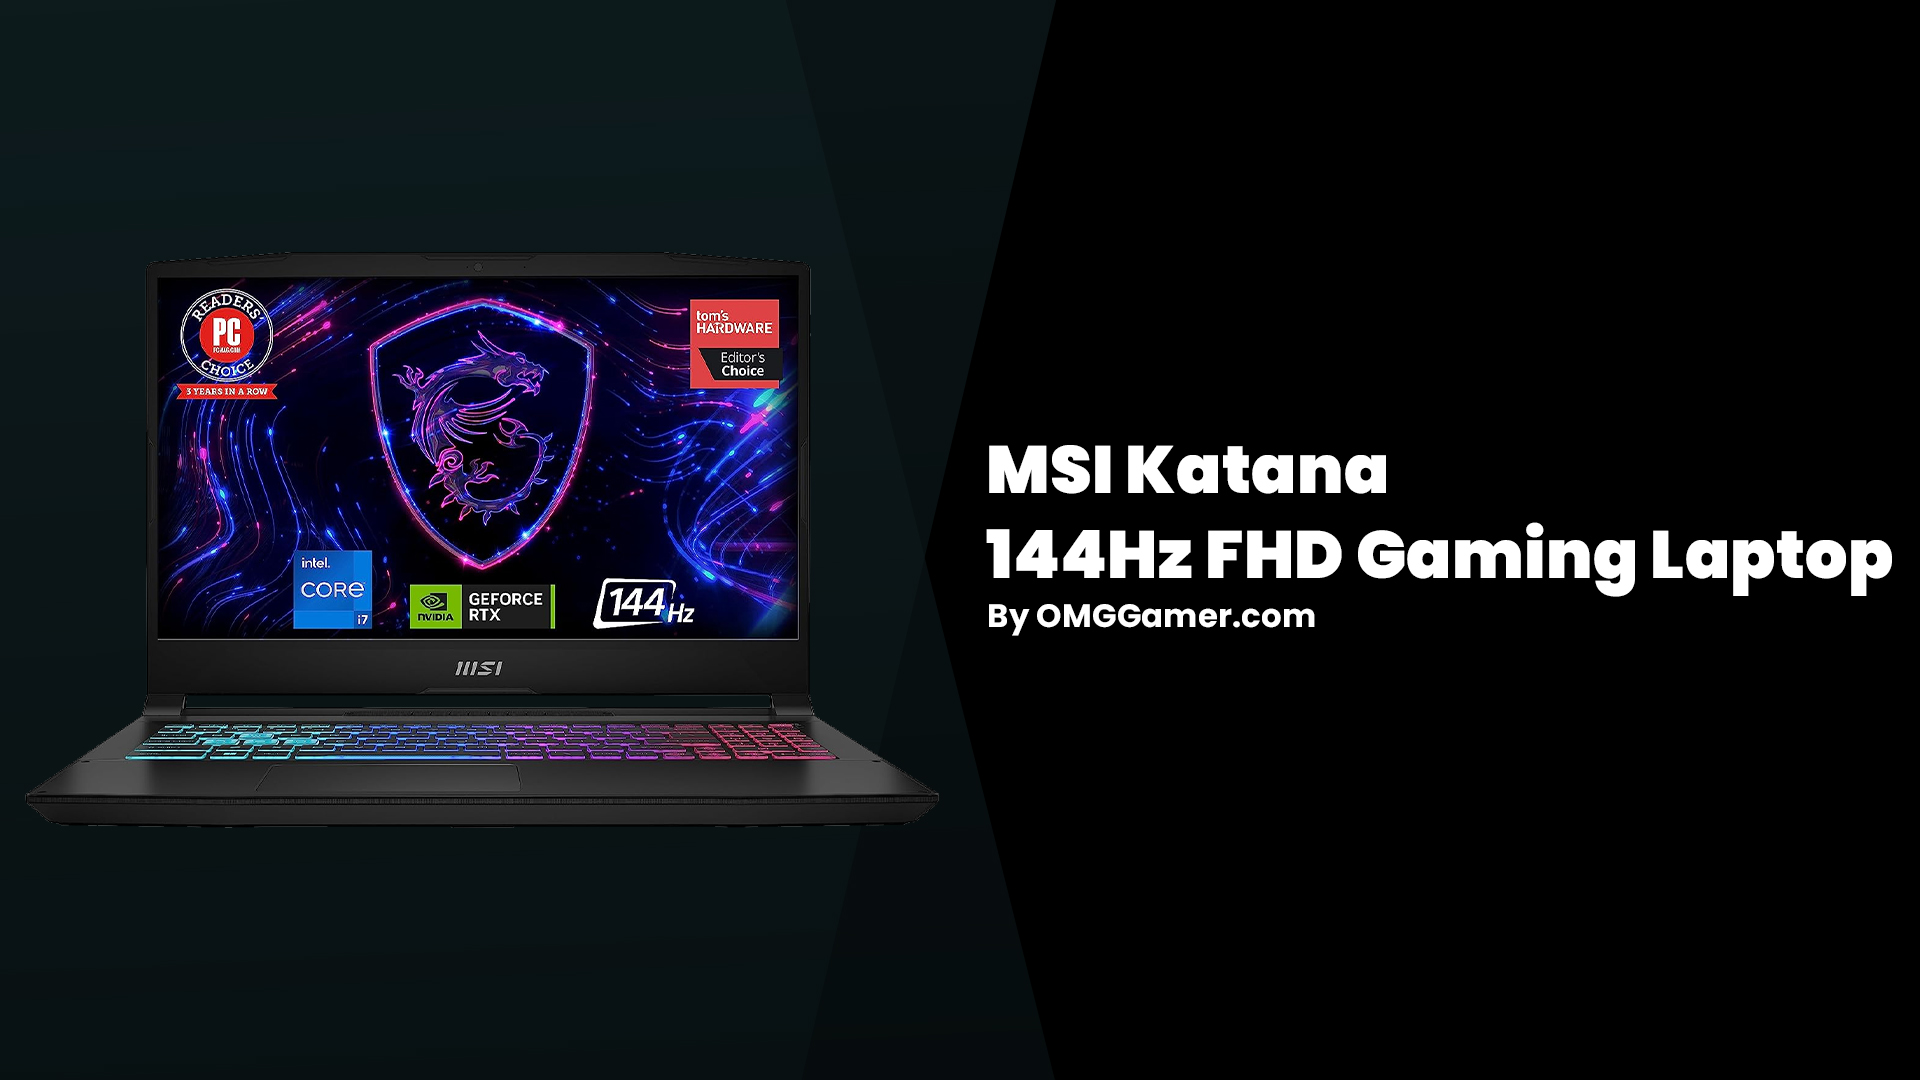 MSI Katana 144Hz FHD Gaming Laptop